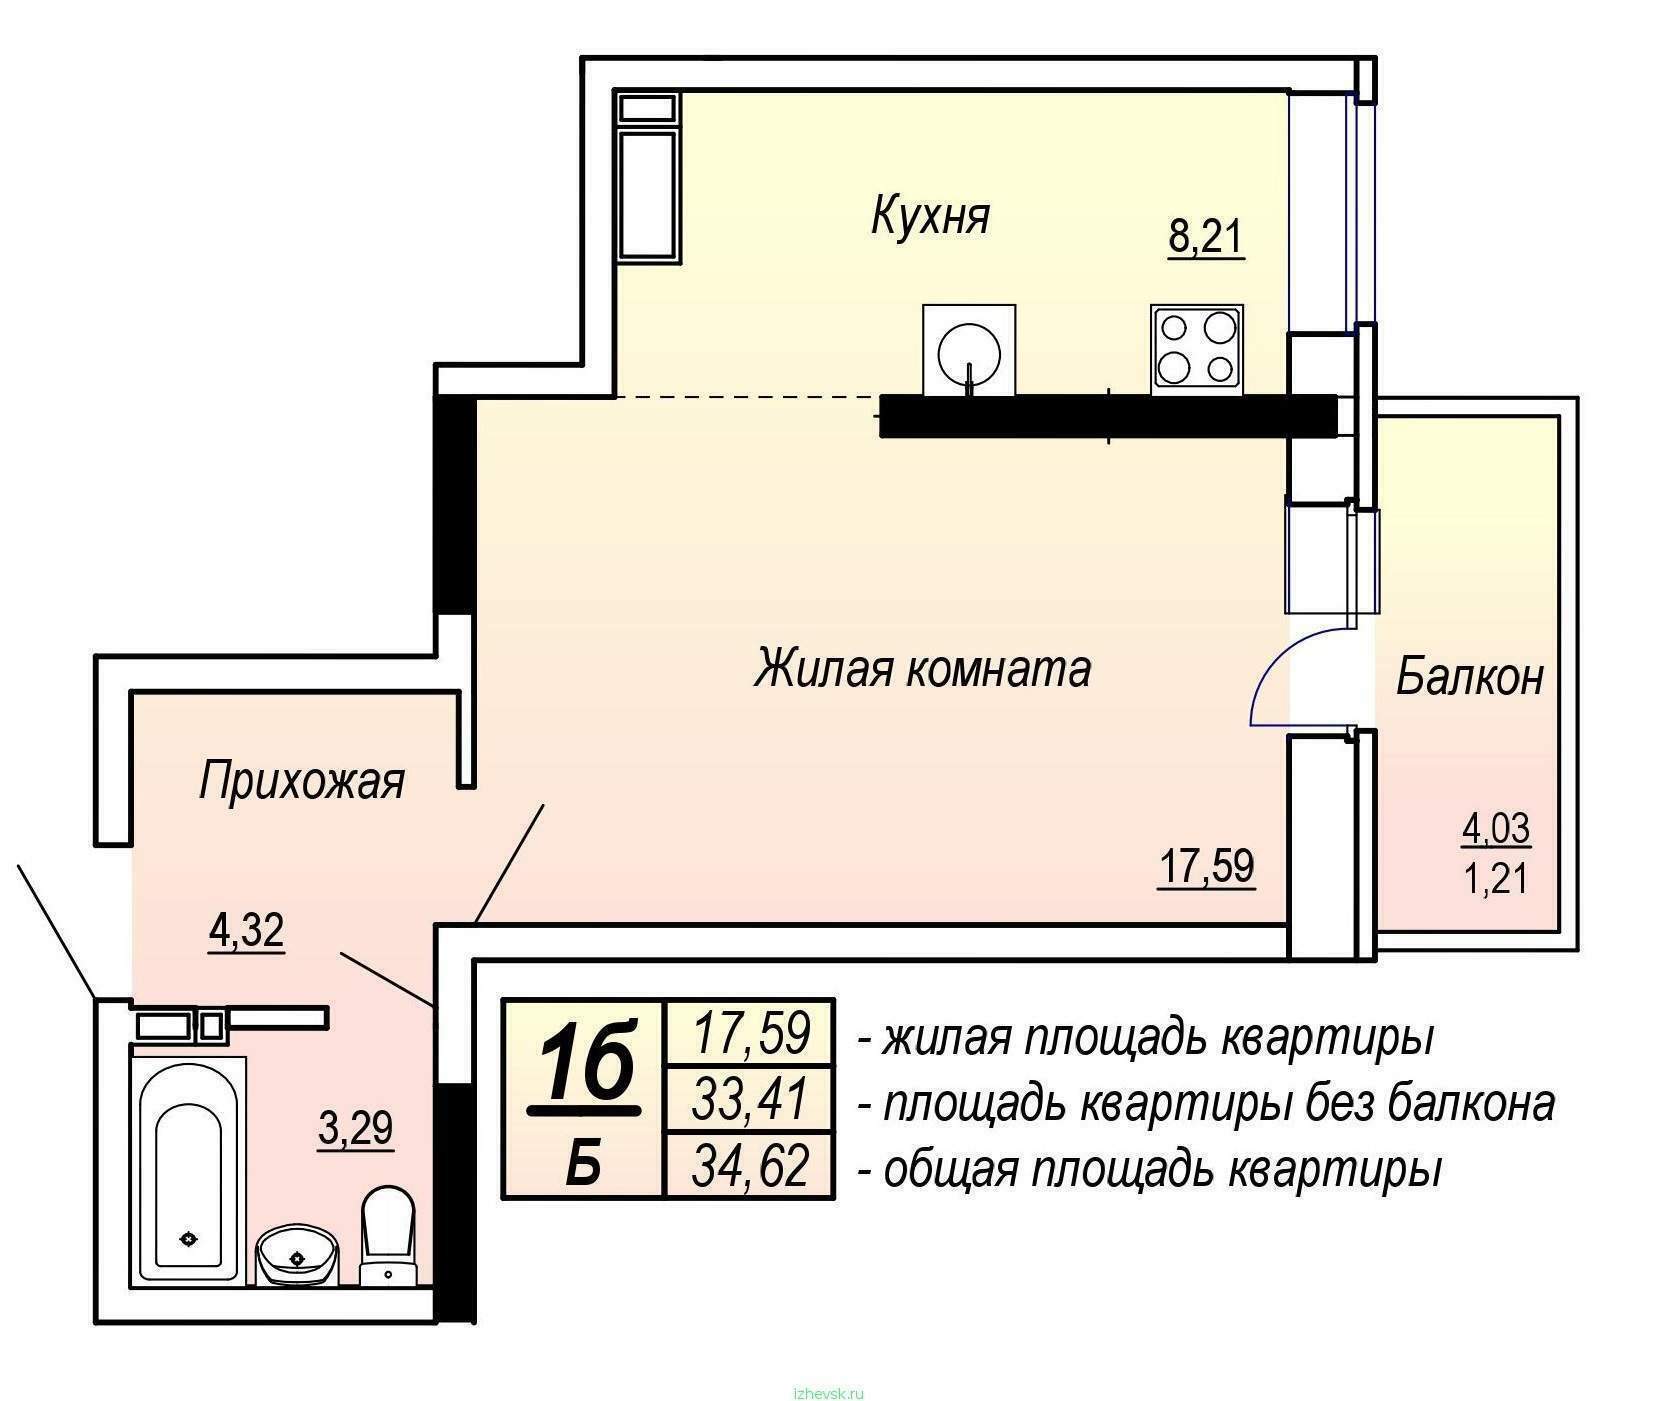 Жилые помещения это какие. Общая площадь квартиры. Жилая площадь квартиры и общая площадь. Жилая площадь квартиры это. Общая площадь квартиры на плане.